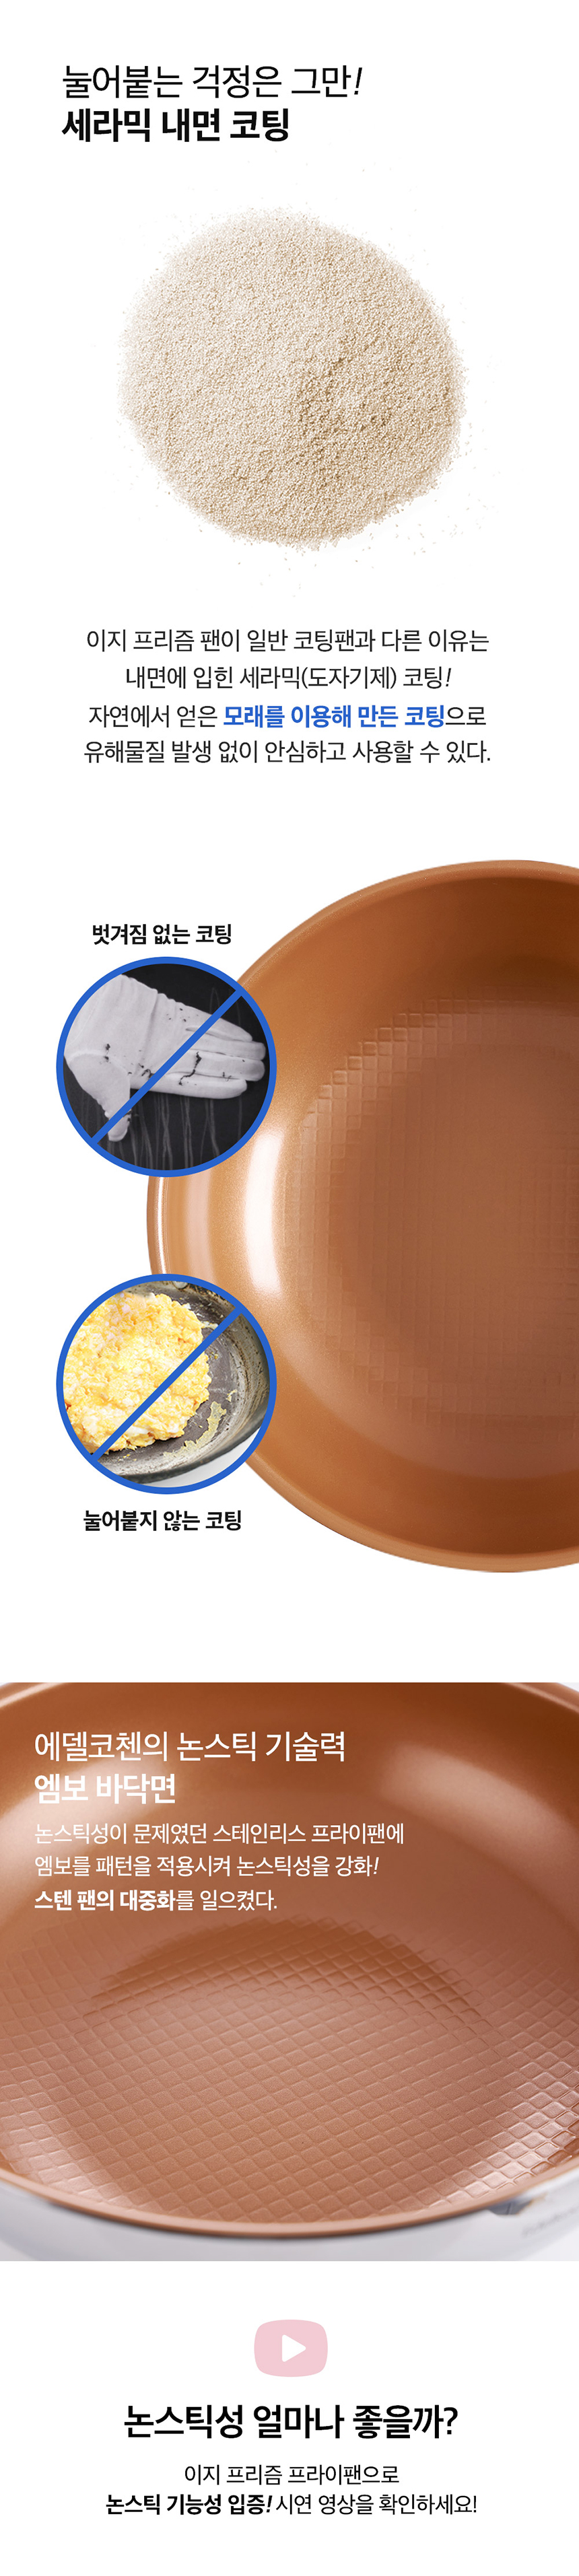 easy-cooper-28pan-wok-pancake-3set_SPEC_3.jpg